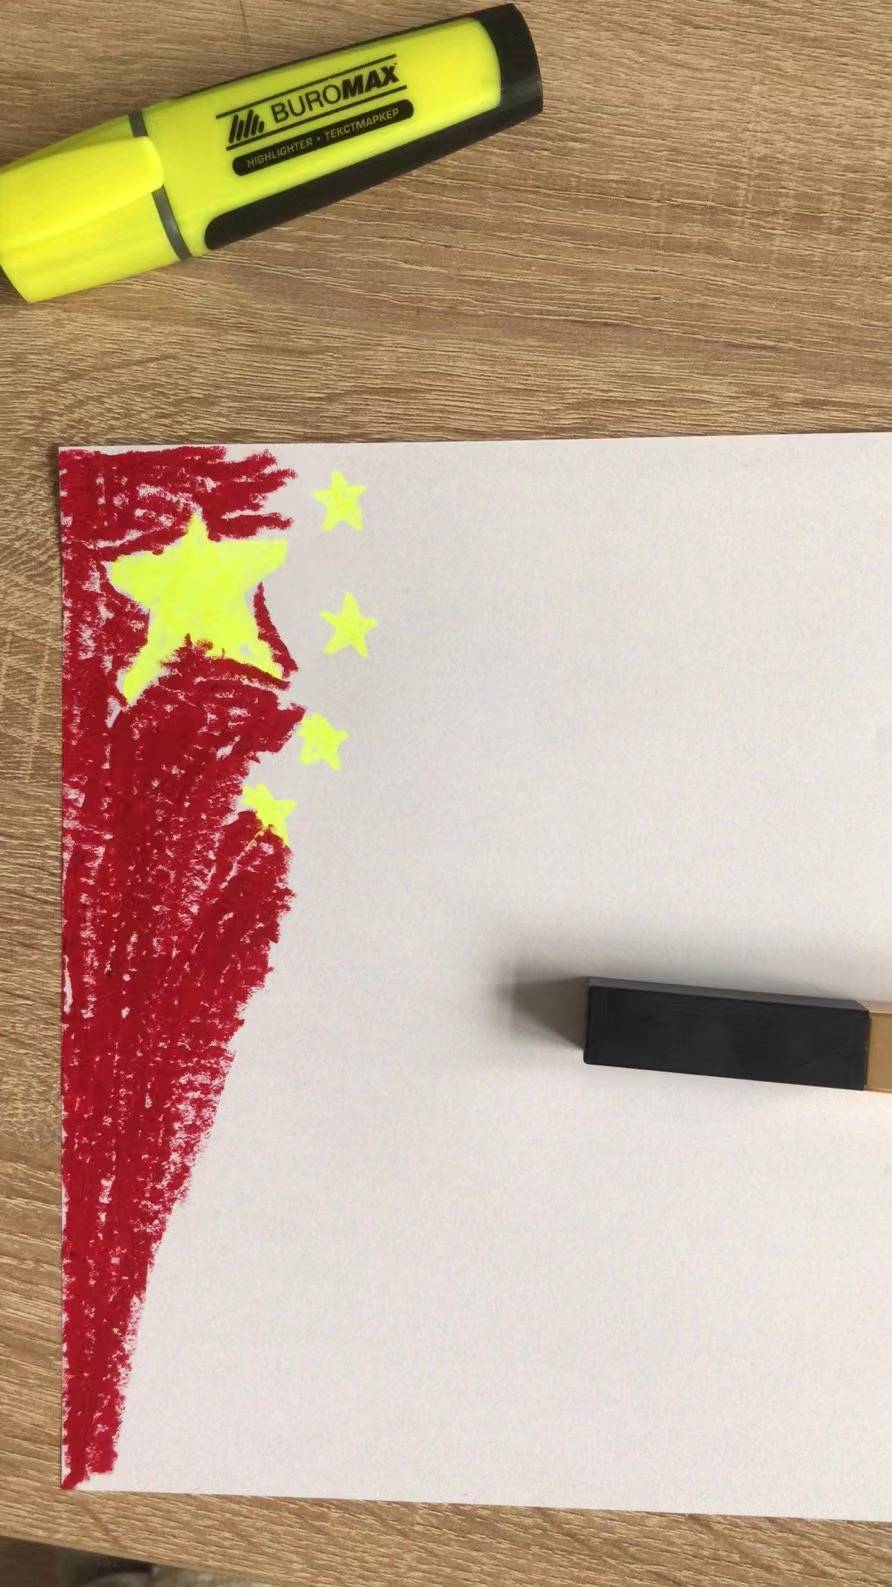 标准中国国旗画法图片